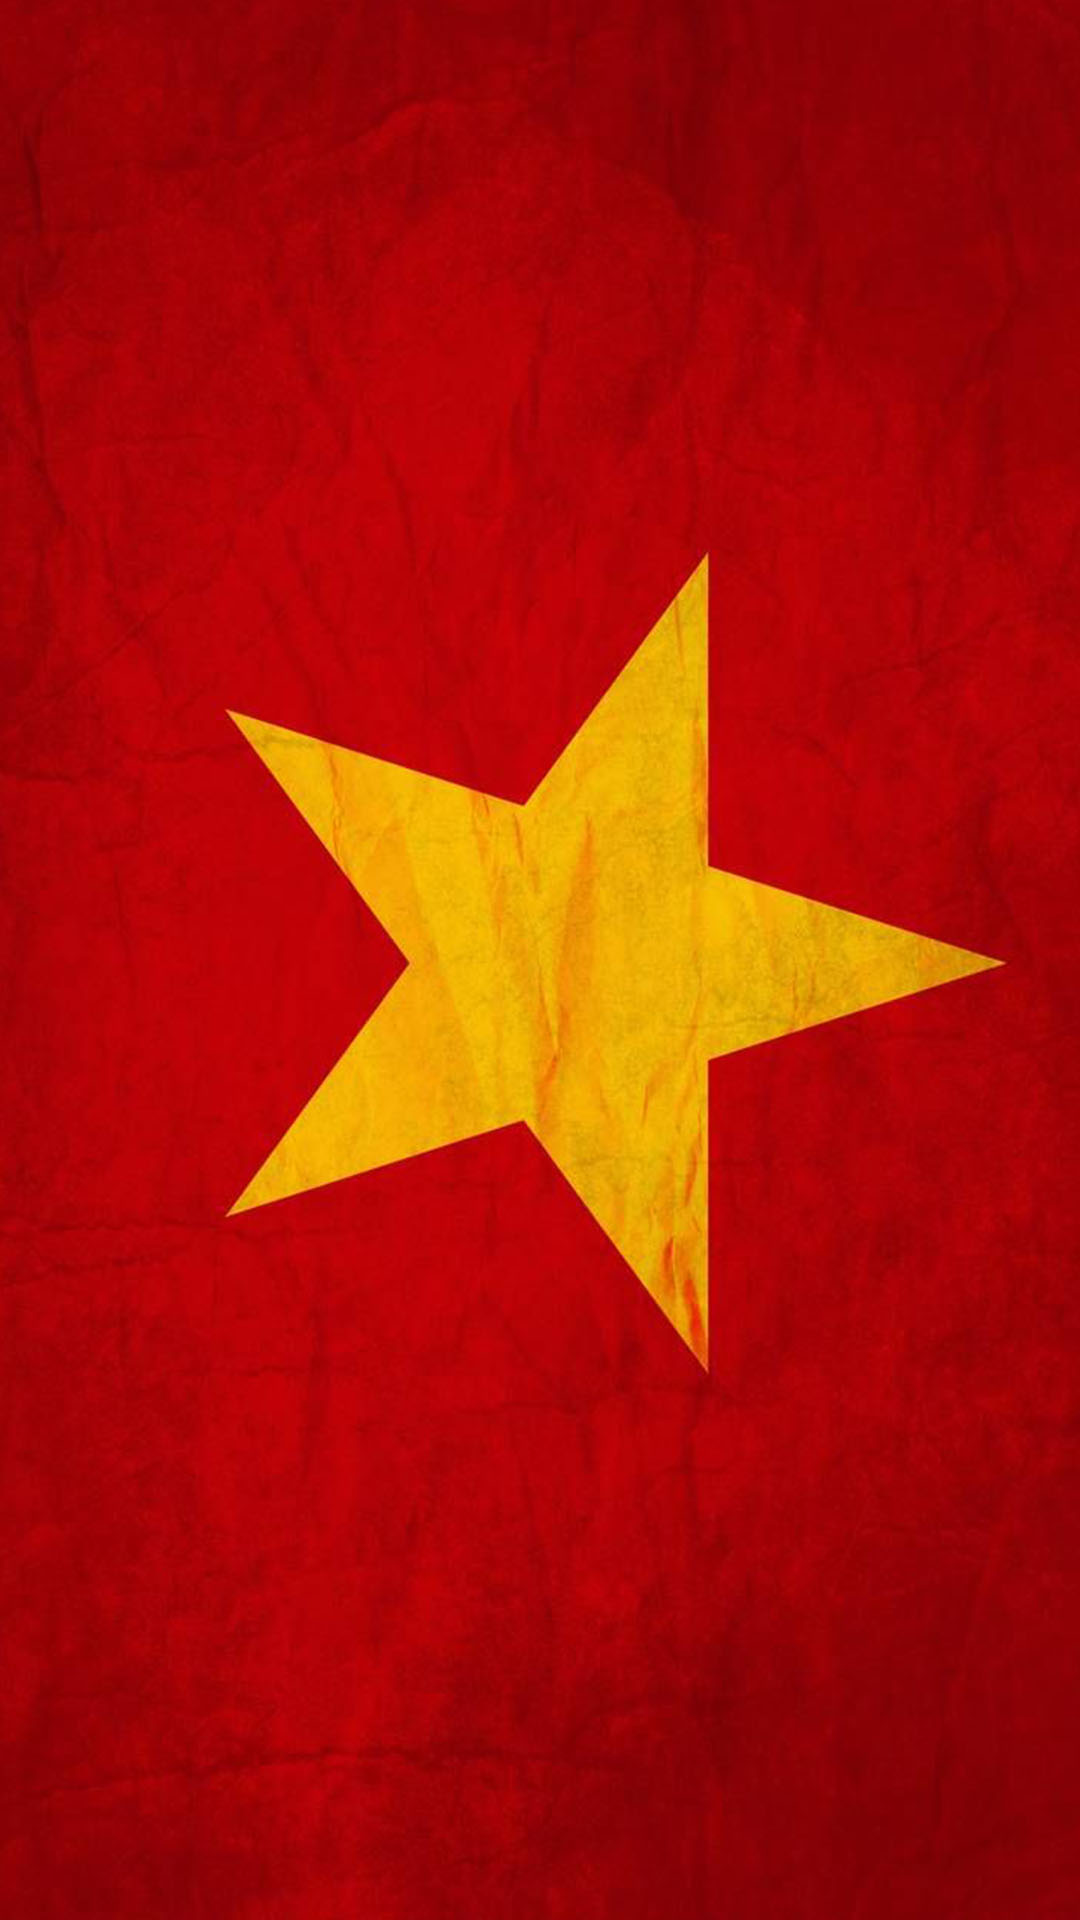 Hình nền lá cờ Việt Nam đẹp: Hãy chiêm ngưỡng những mảng màu sắc tươi trẻ, nét chi tiết tỉ mỉ trên hình nền lá cờ Việt Nam đẹp nhất. Bức tranh sẽ làm cho bạn cảm thấy tự hào về quốc gia mình và đồng thời truyền cảm hứng cho những người xung quanh.